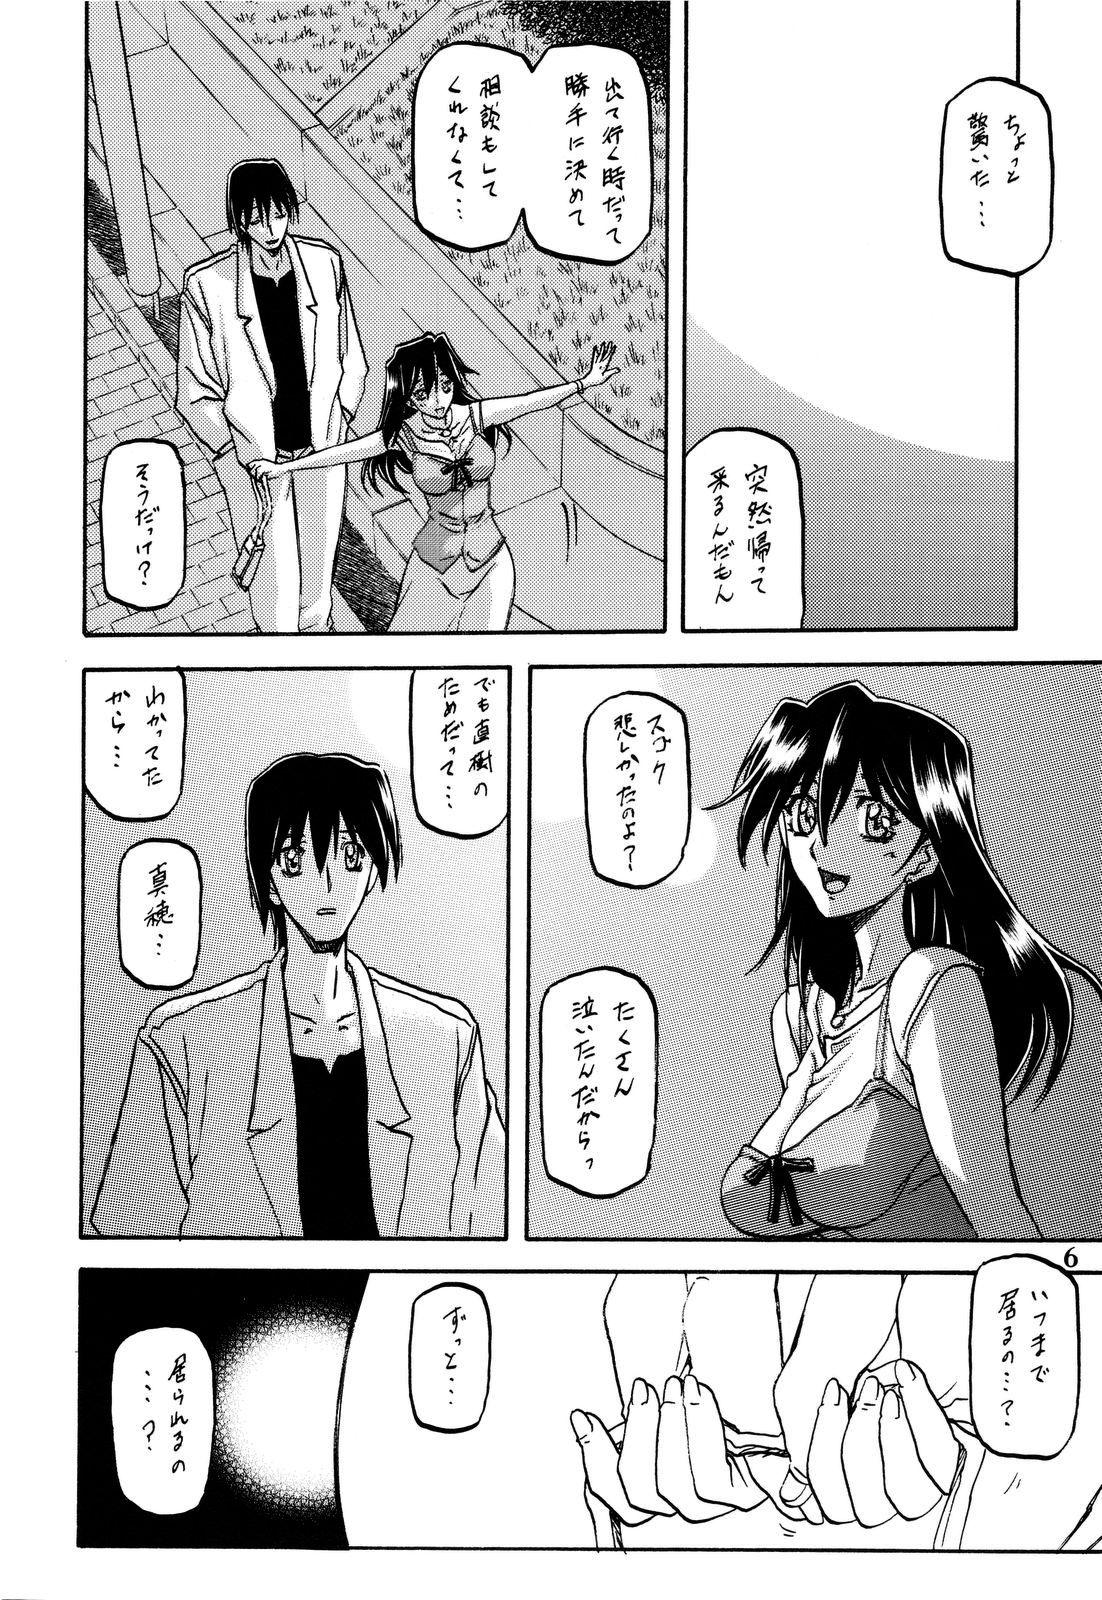 Gaping Akebi no Hana - Akebi no mi Sextoy - Page 6